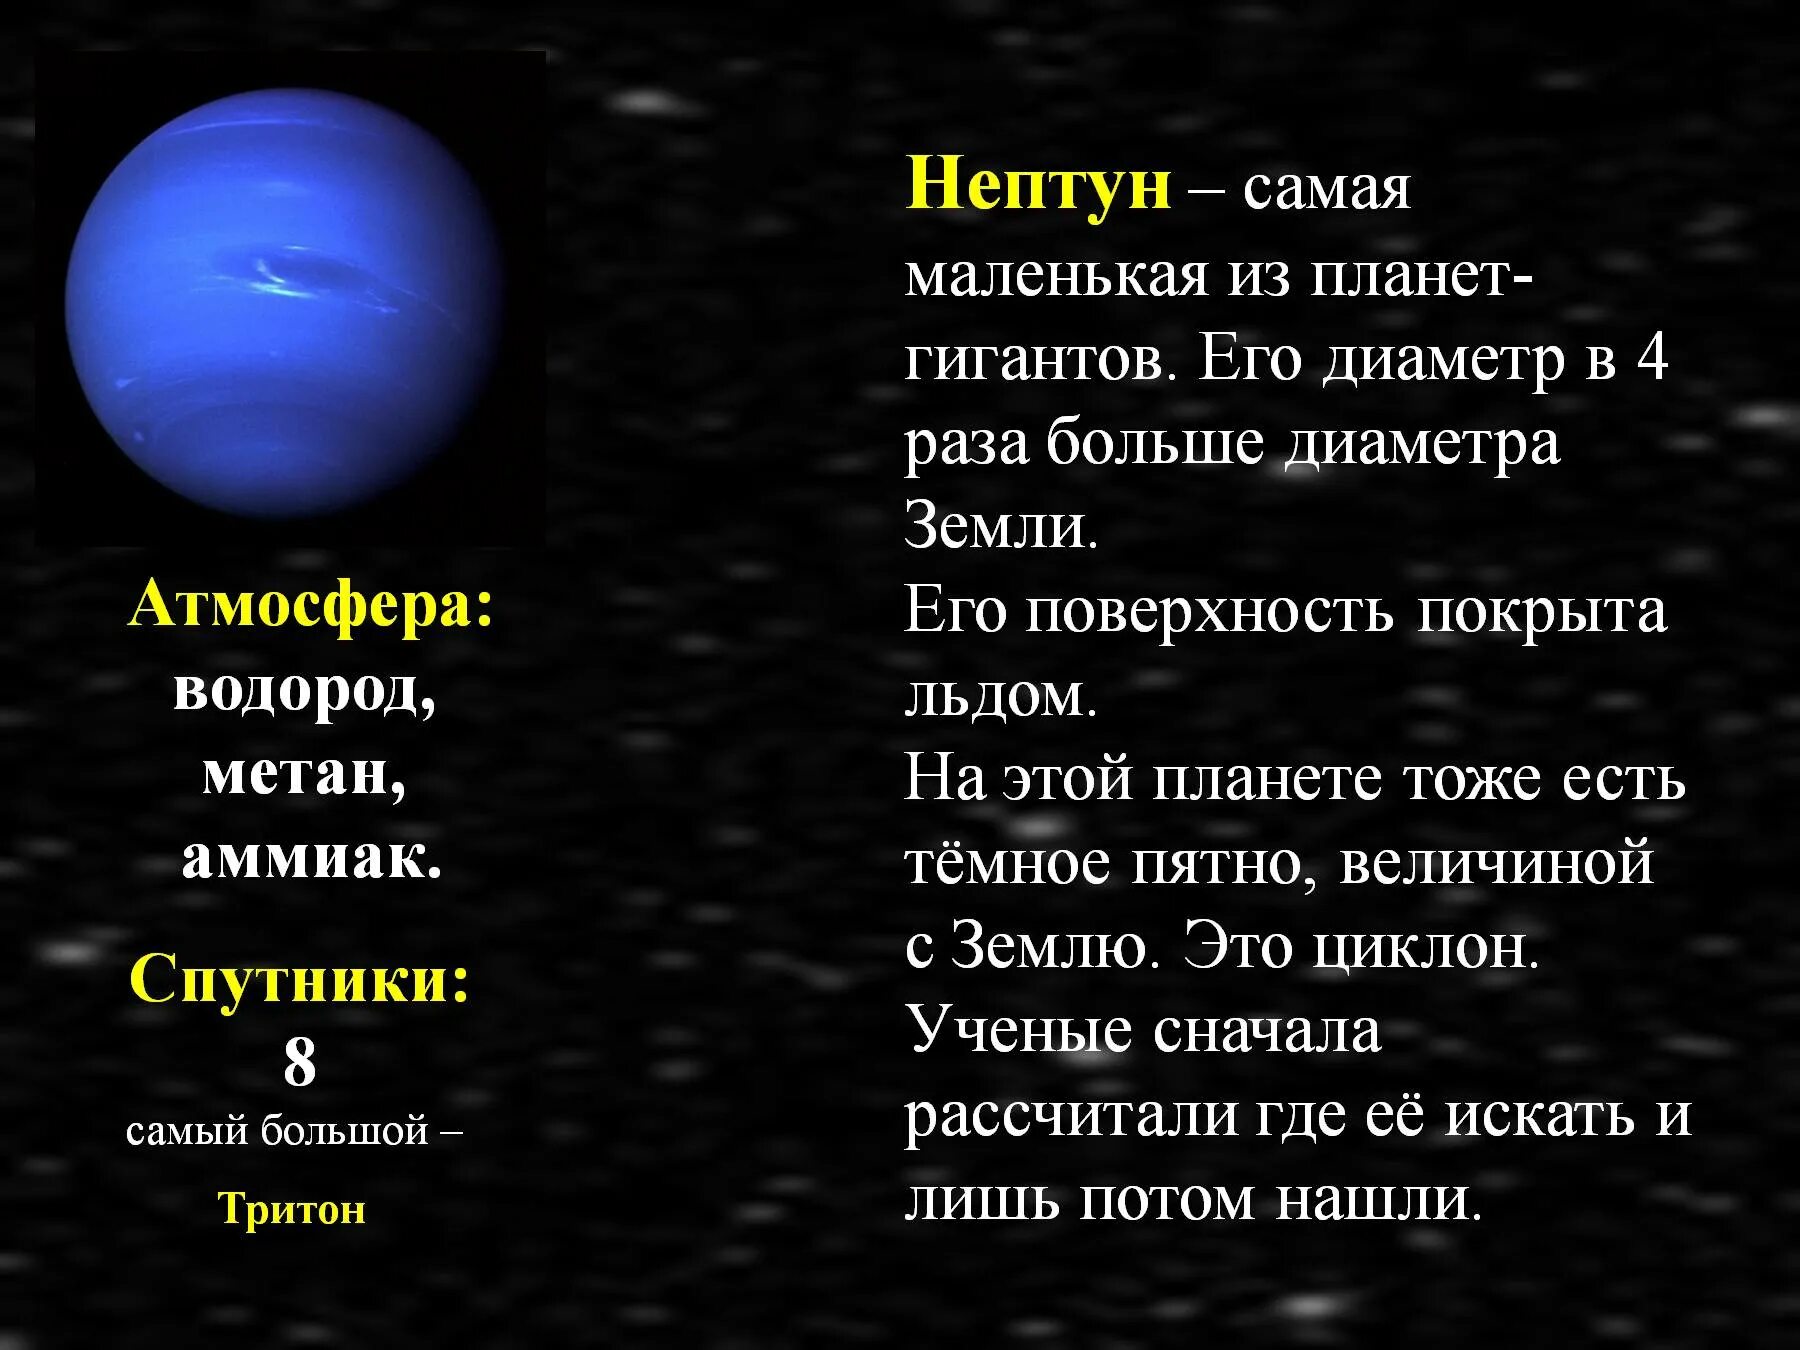 Планеты гиганты Юпитер Сатурн Уран Нептун. Нептун Планета спутники Тритон. Планеты гиганты солнечной системы Нептун. Нептун самая маленькая Планета гигант солнечной. Маленький нептун